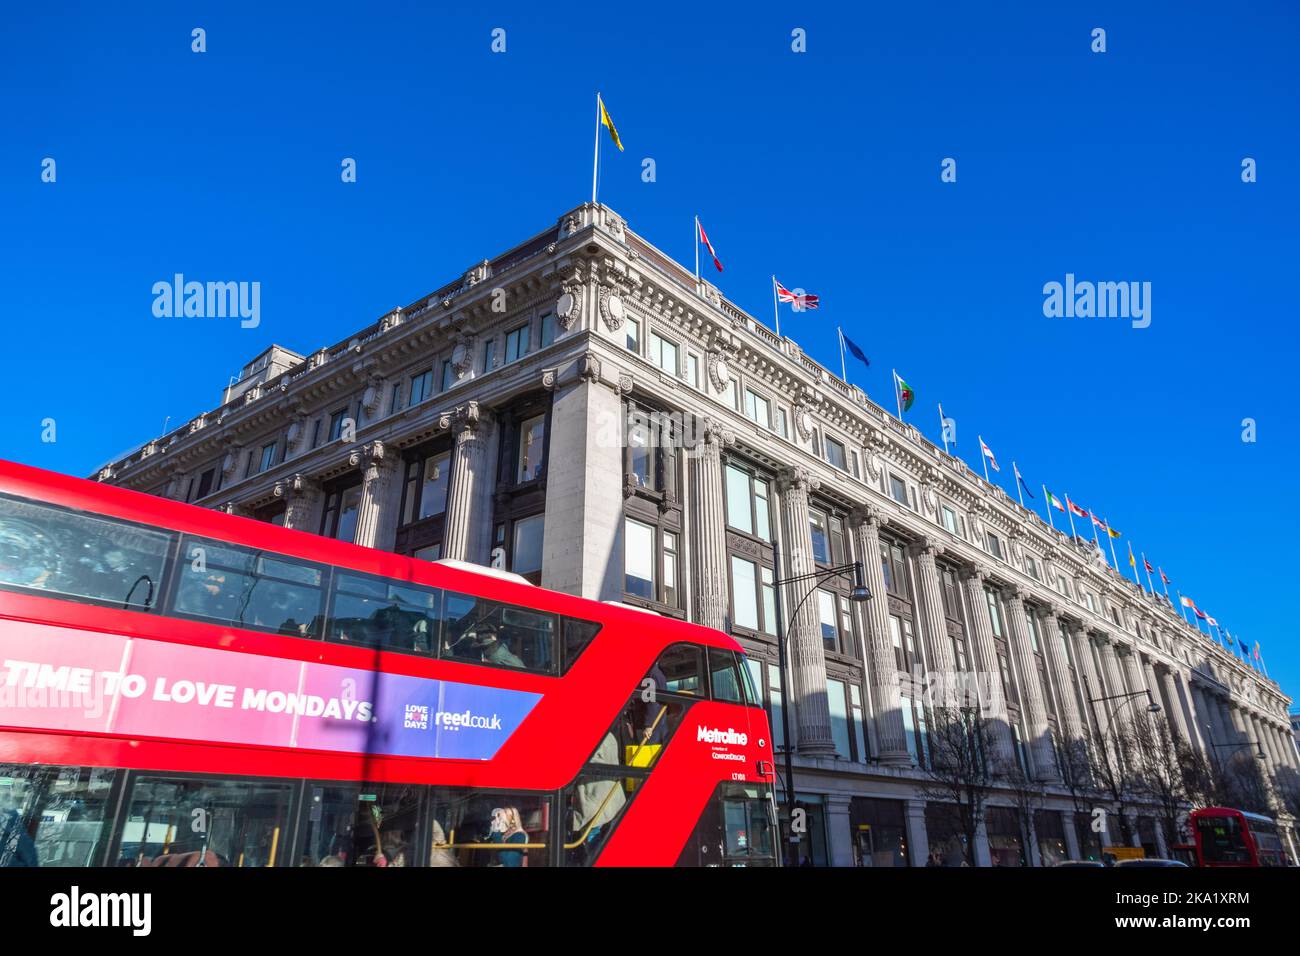 Londres, Royaume-Uni - 04 décembre 2021 - Selfridges grands magasins avec un bus à deux étages passant à l'avant-plan Banque D'Images